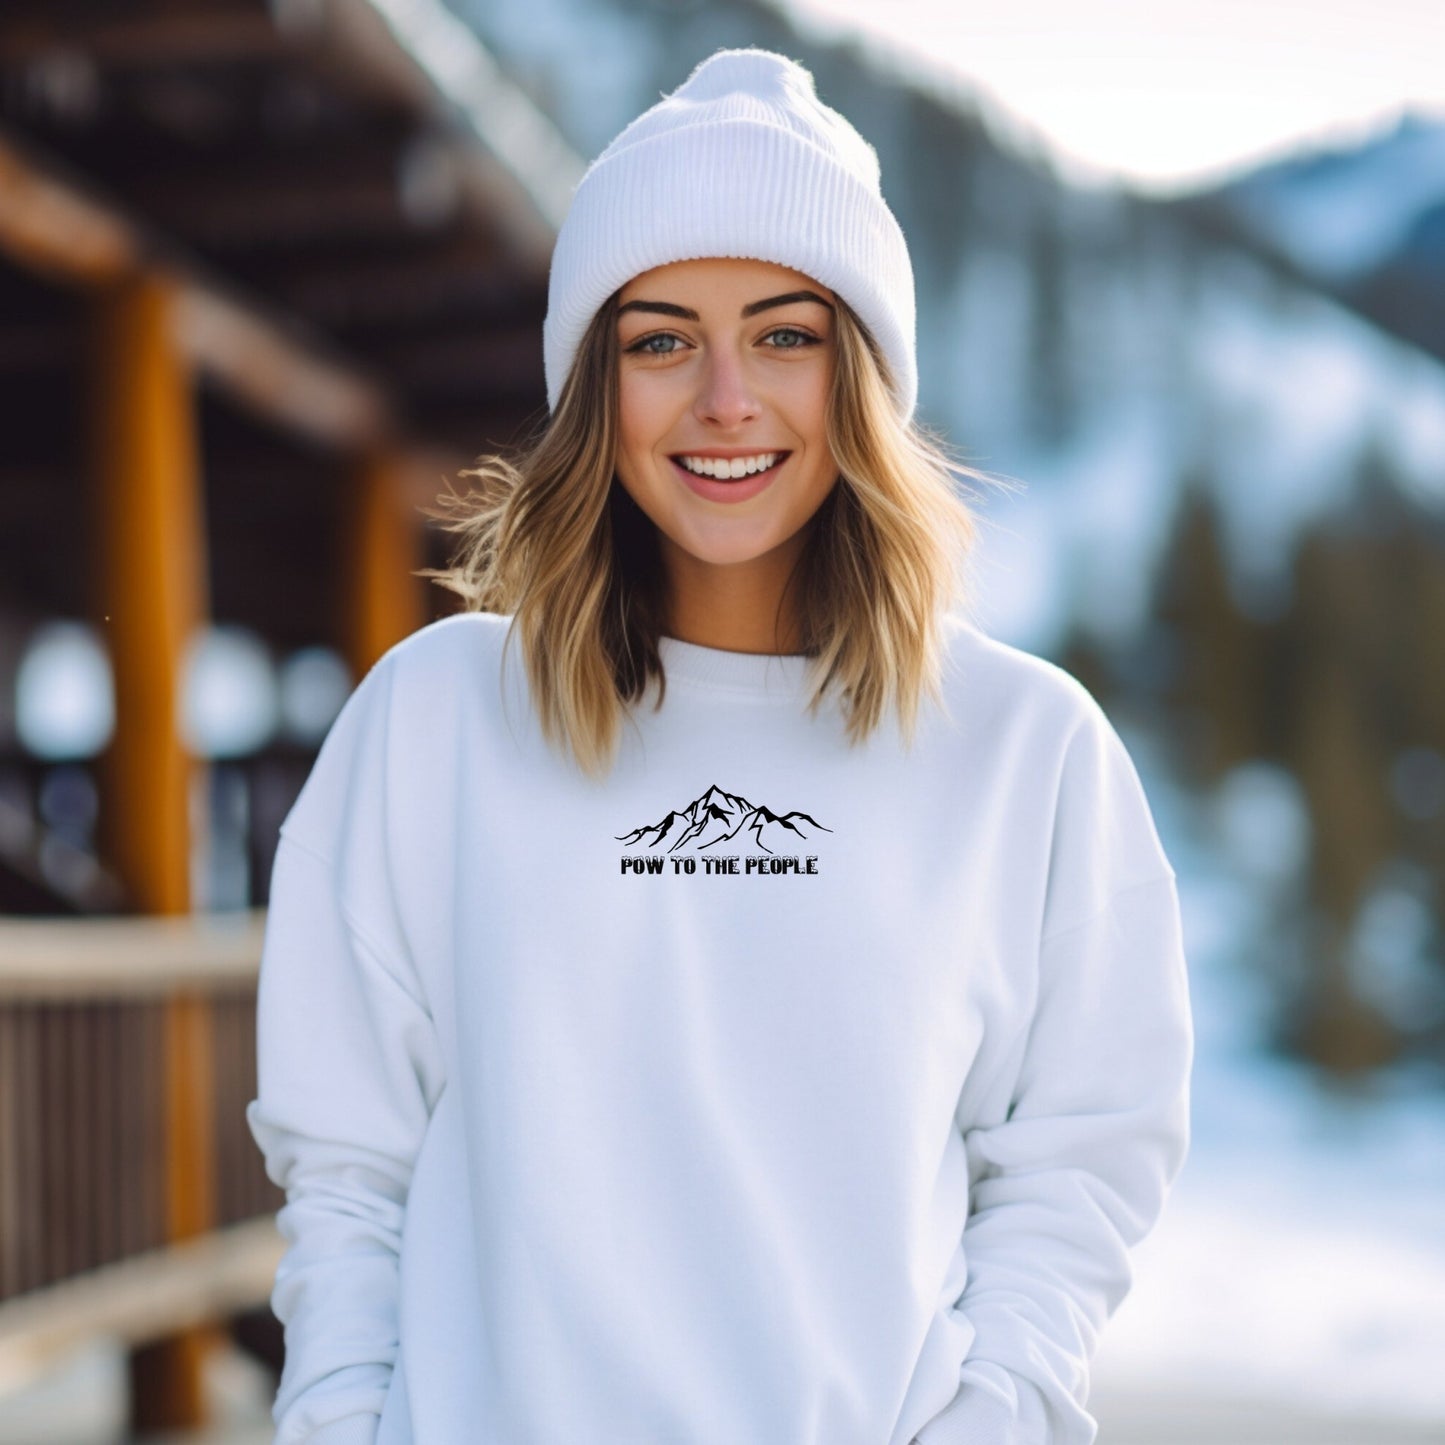 Pow to the People - Genser - Sweater med ski og snømotiv - DoUdare